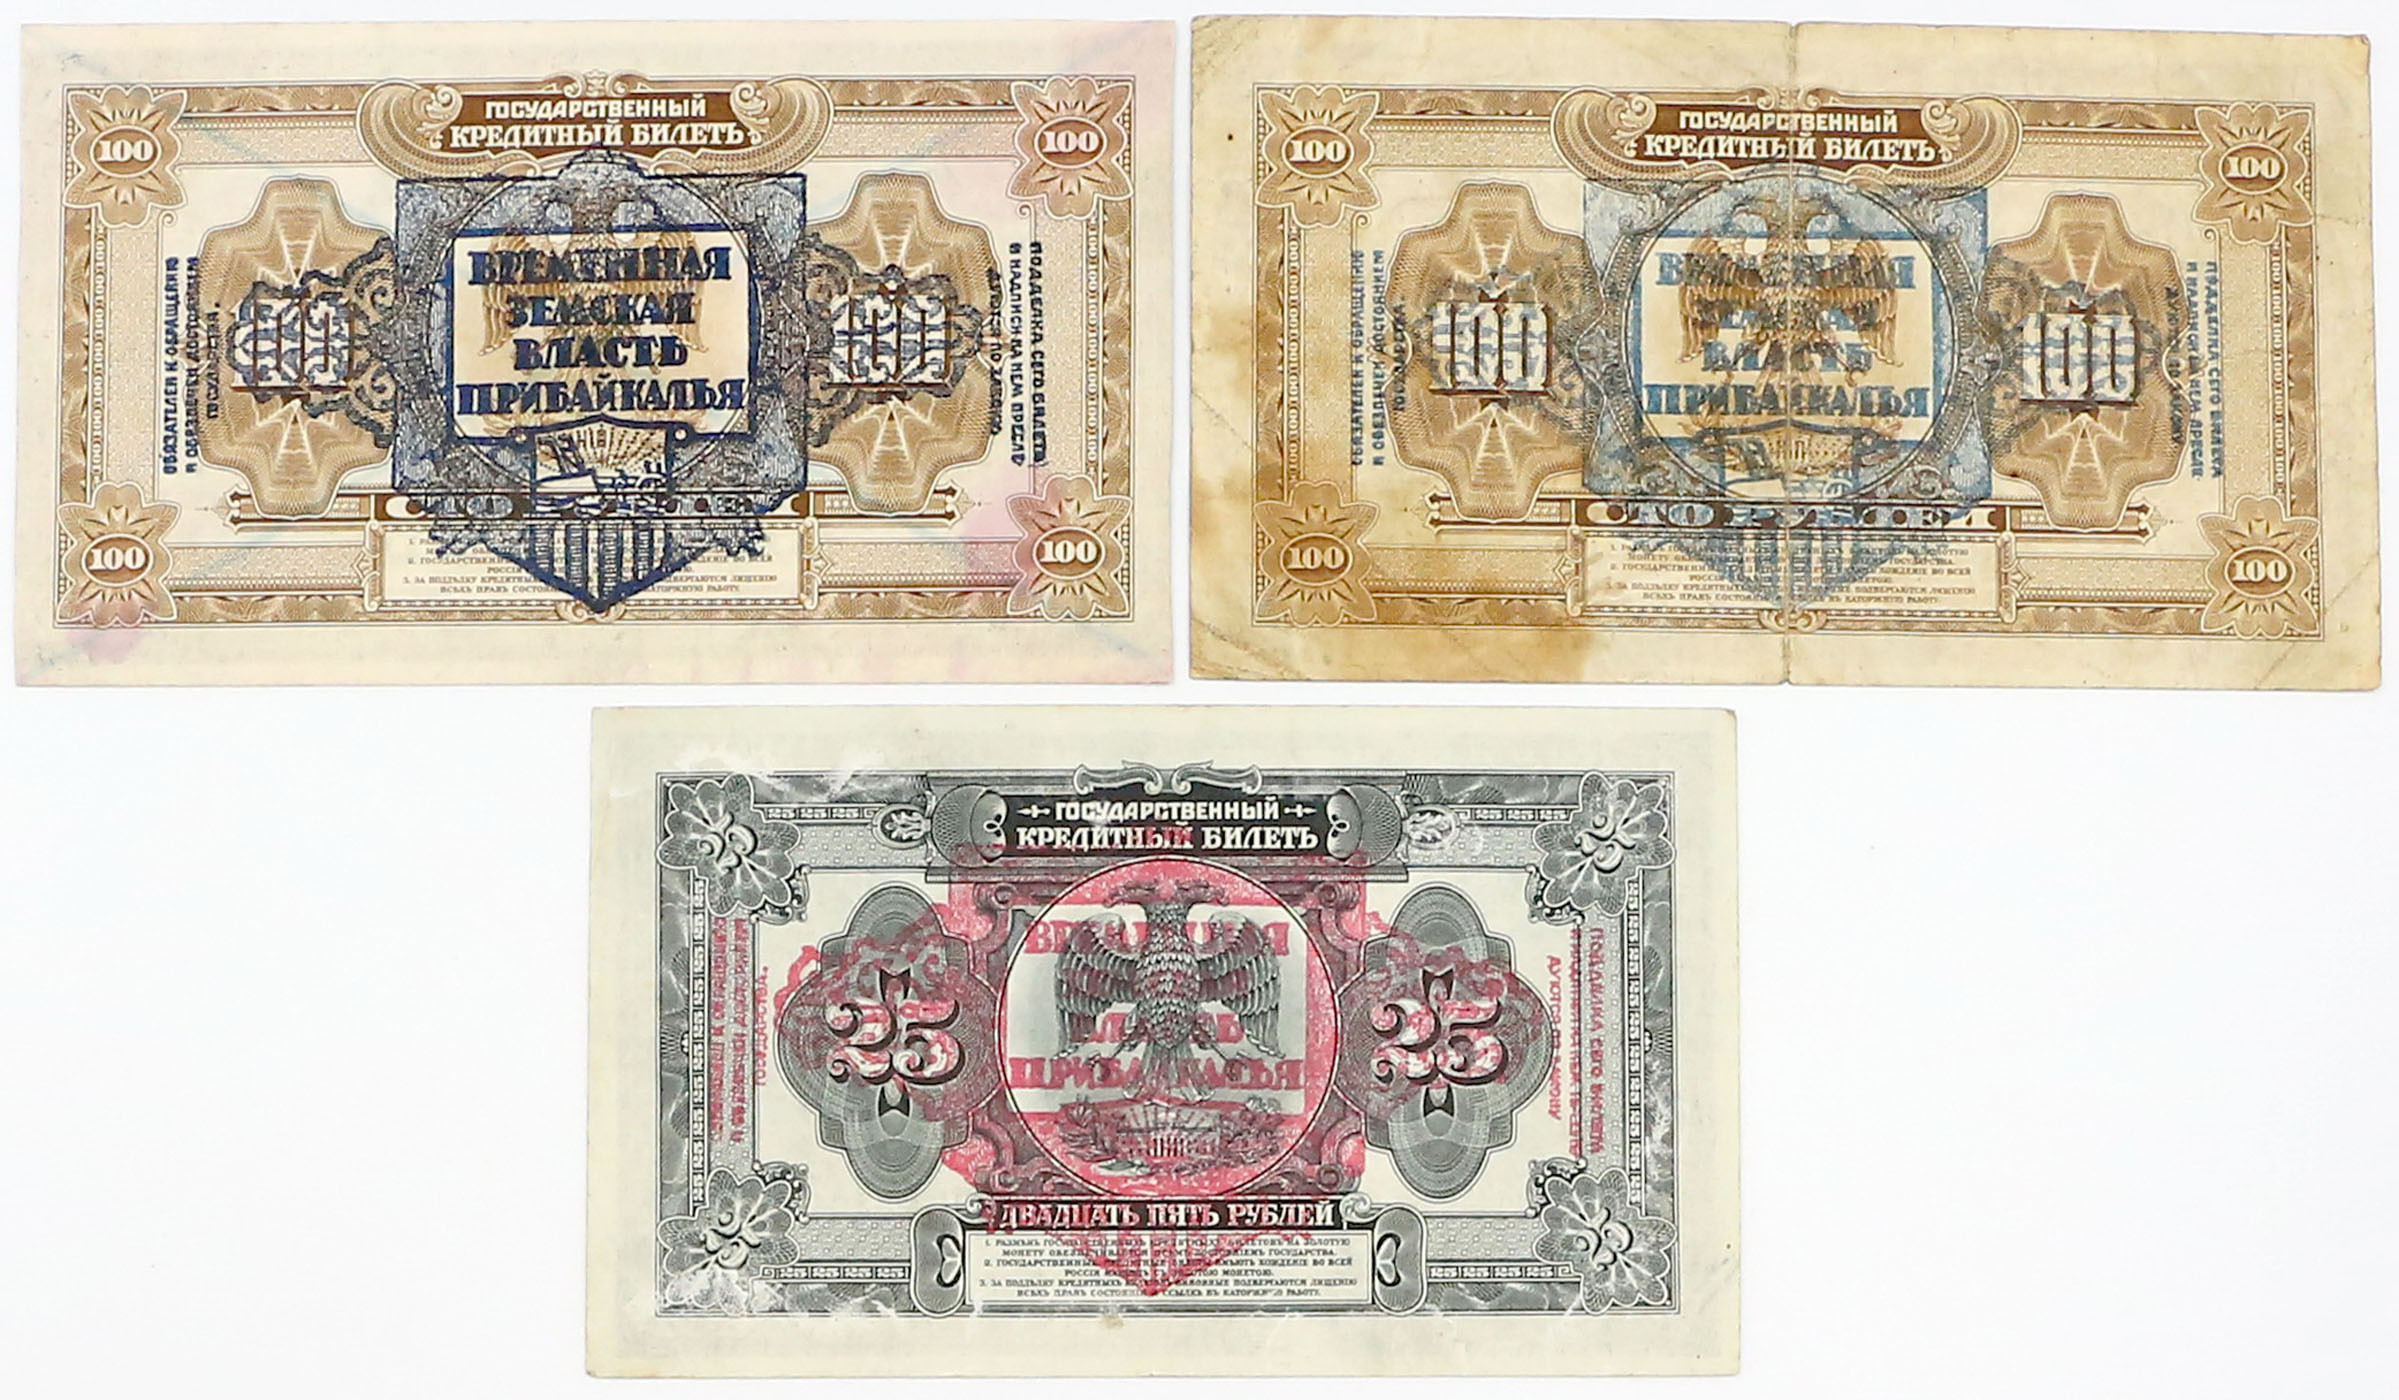 Rosja 25-100 rubli 1918, zestaw 3 banknotów